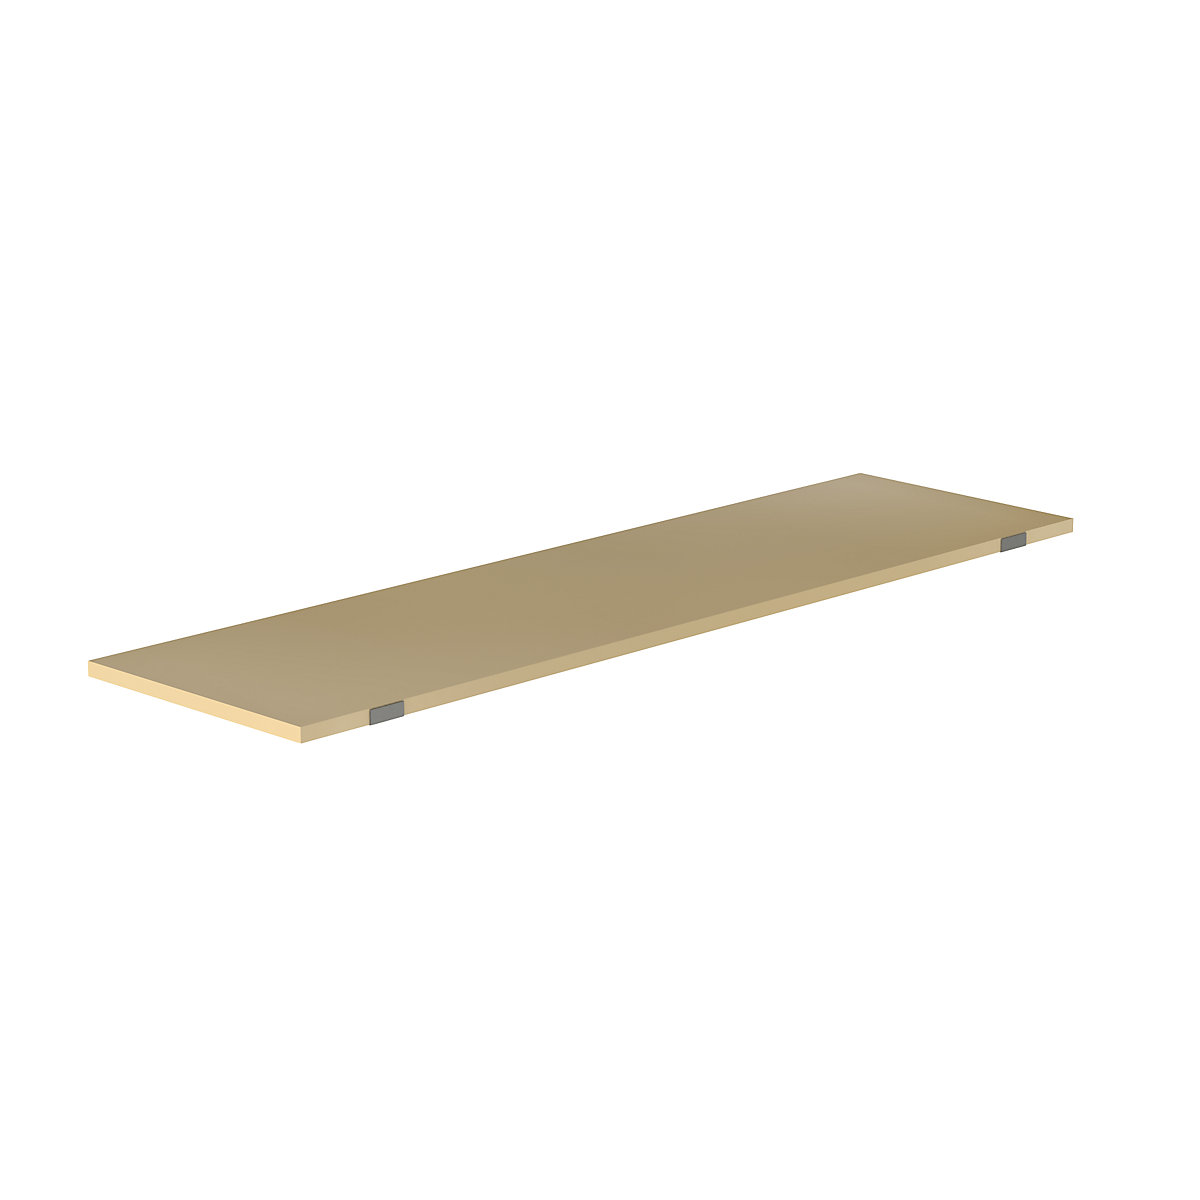 EUROKRAFTpro – Shelf for pallet shelf unit, moulded chipboard, for beam length 2700 mm, shelf unit depth 750 mm